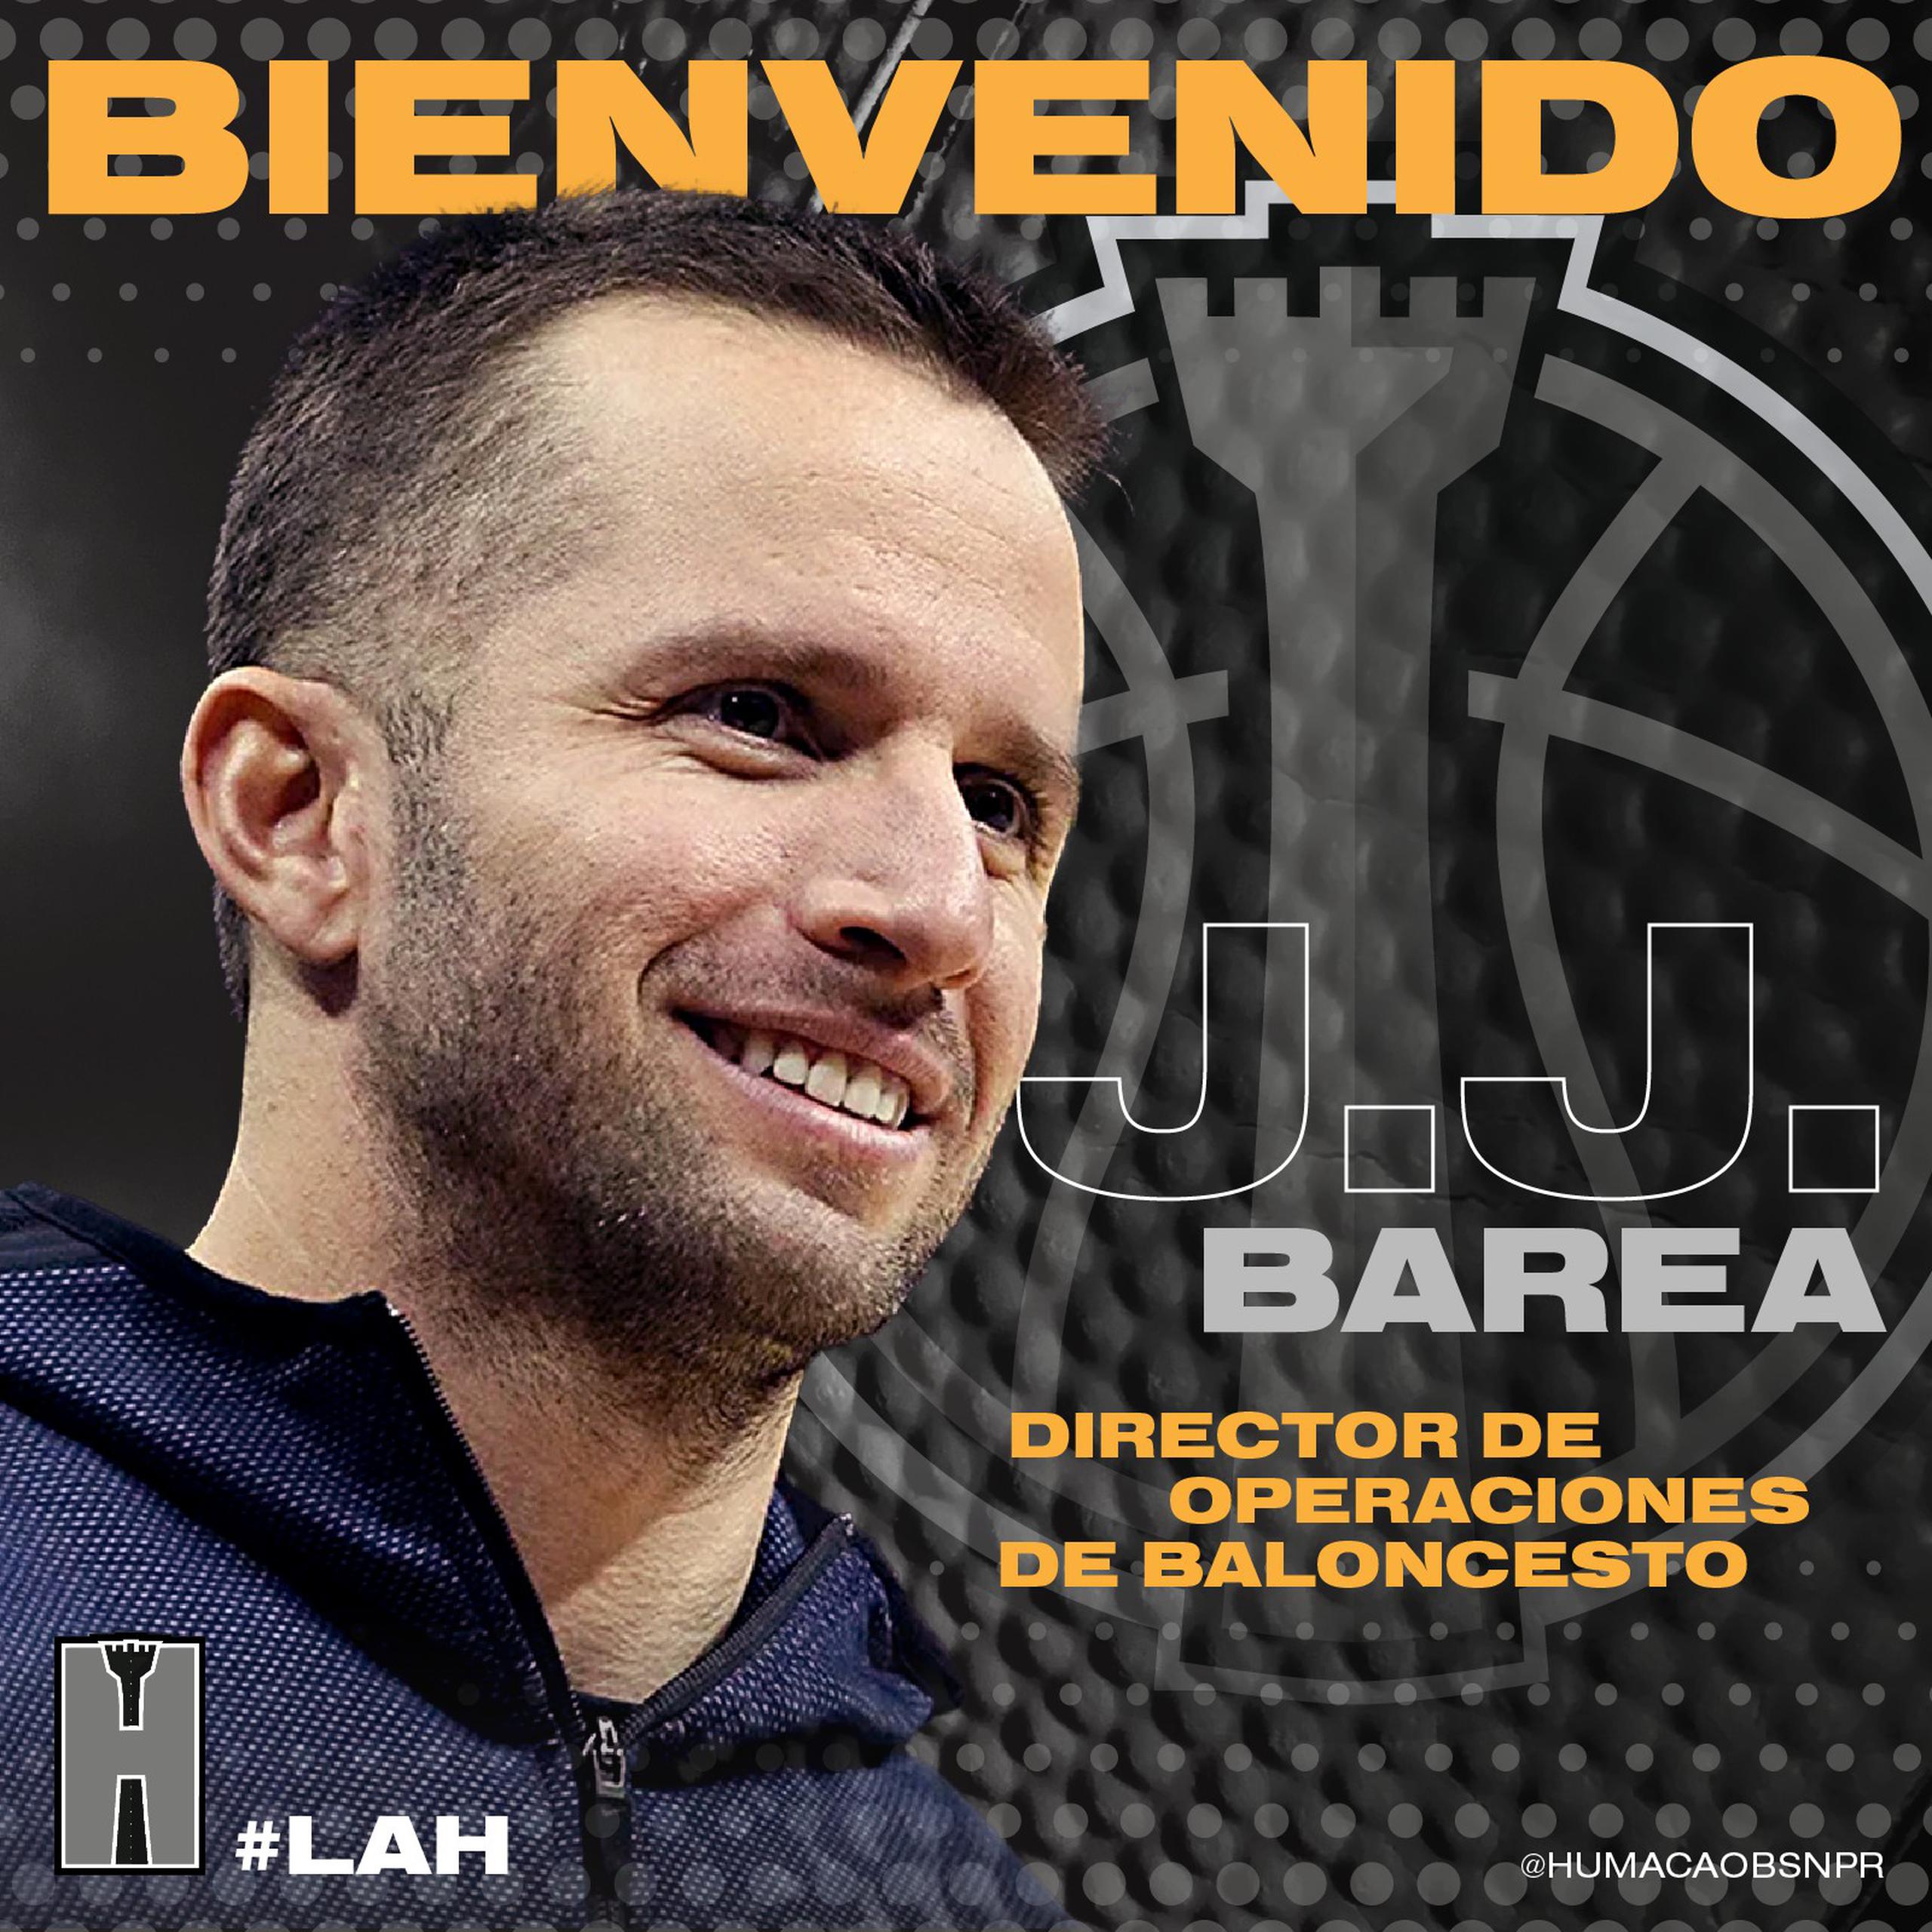 El equipo de Humacao hizo el anuncio de JJ Barea a través de las redes sociales.